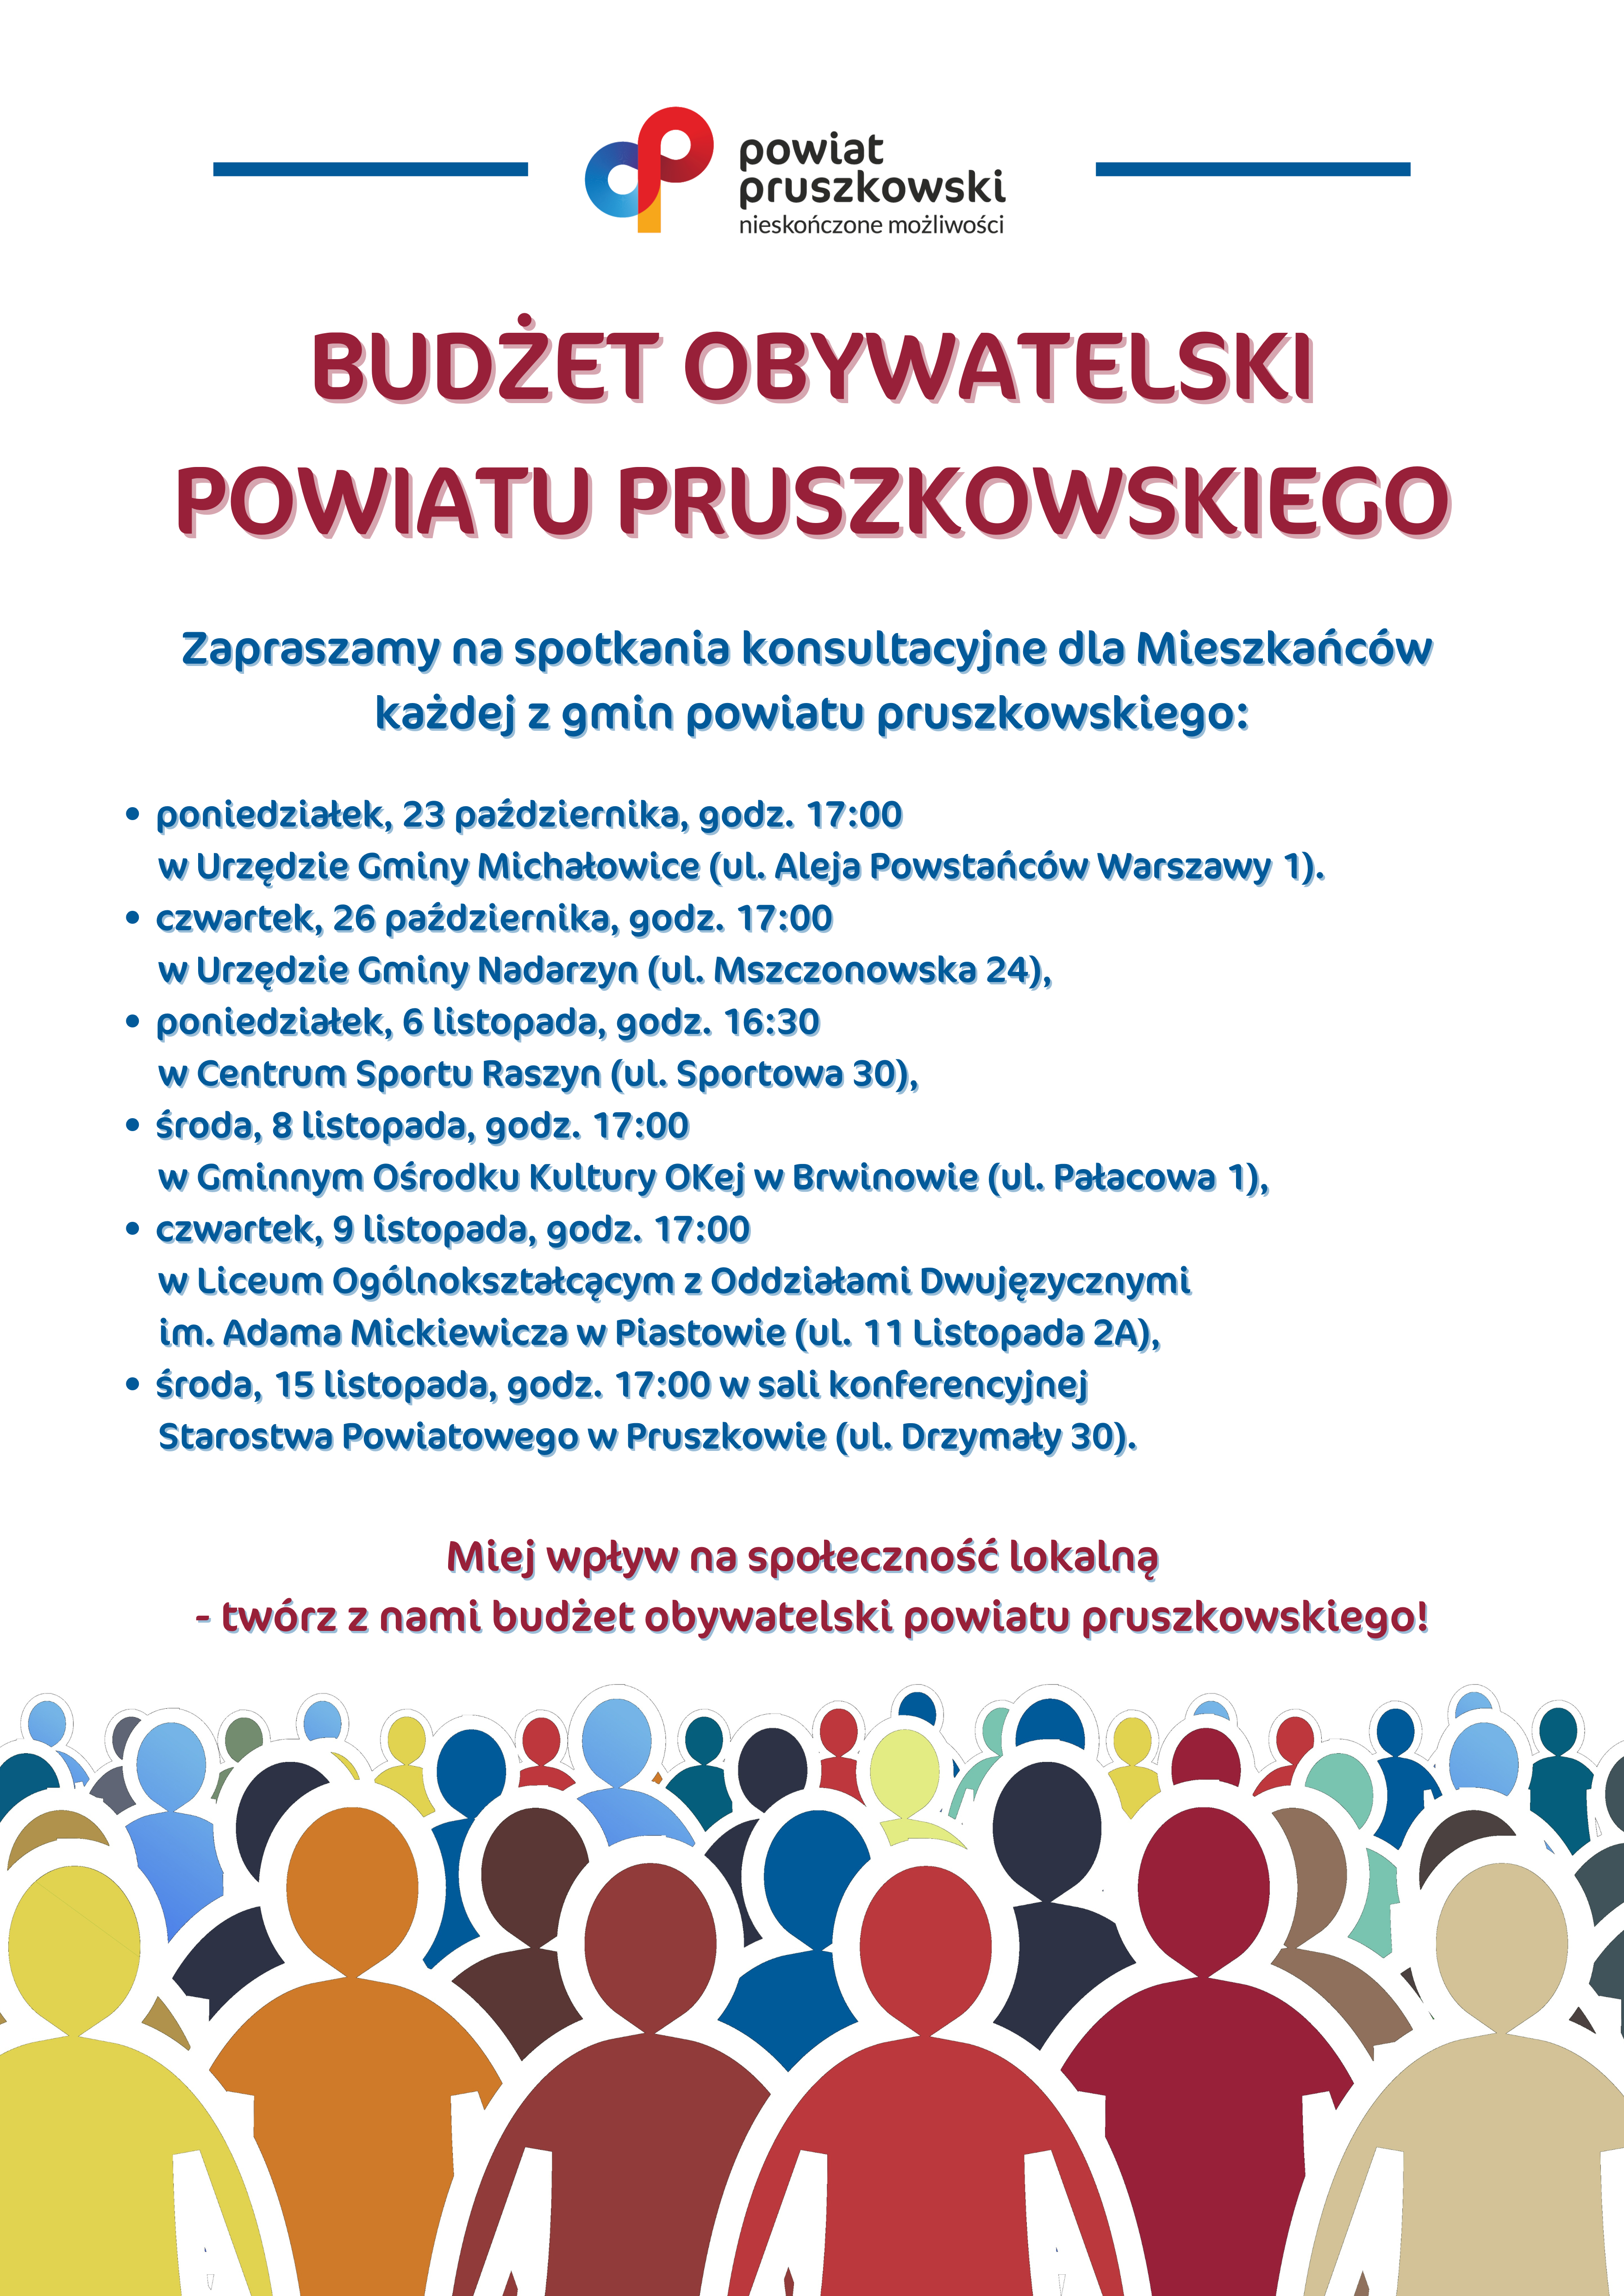 Budżet obywatelski powiatu pruszkowskiego